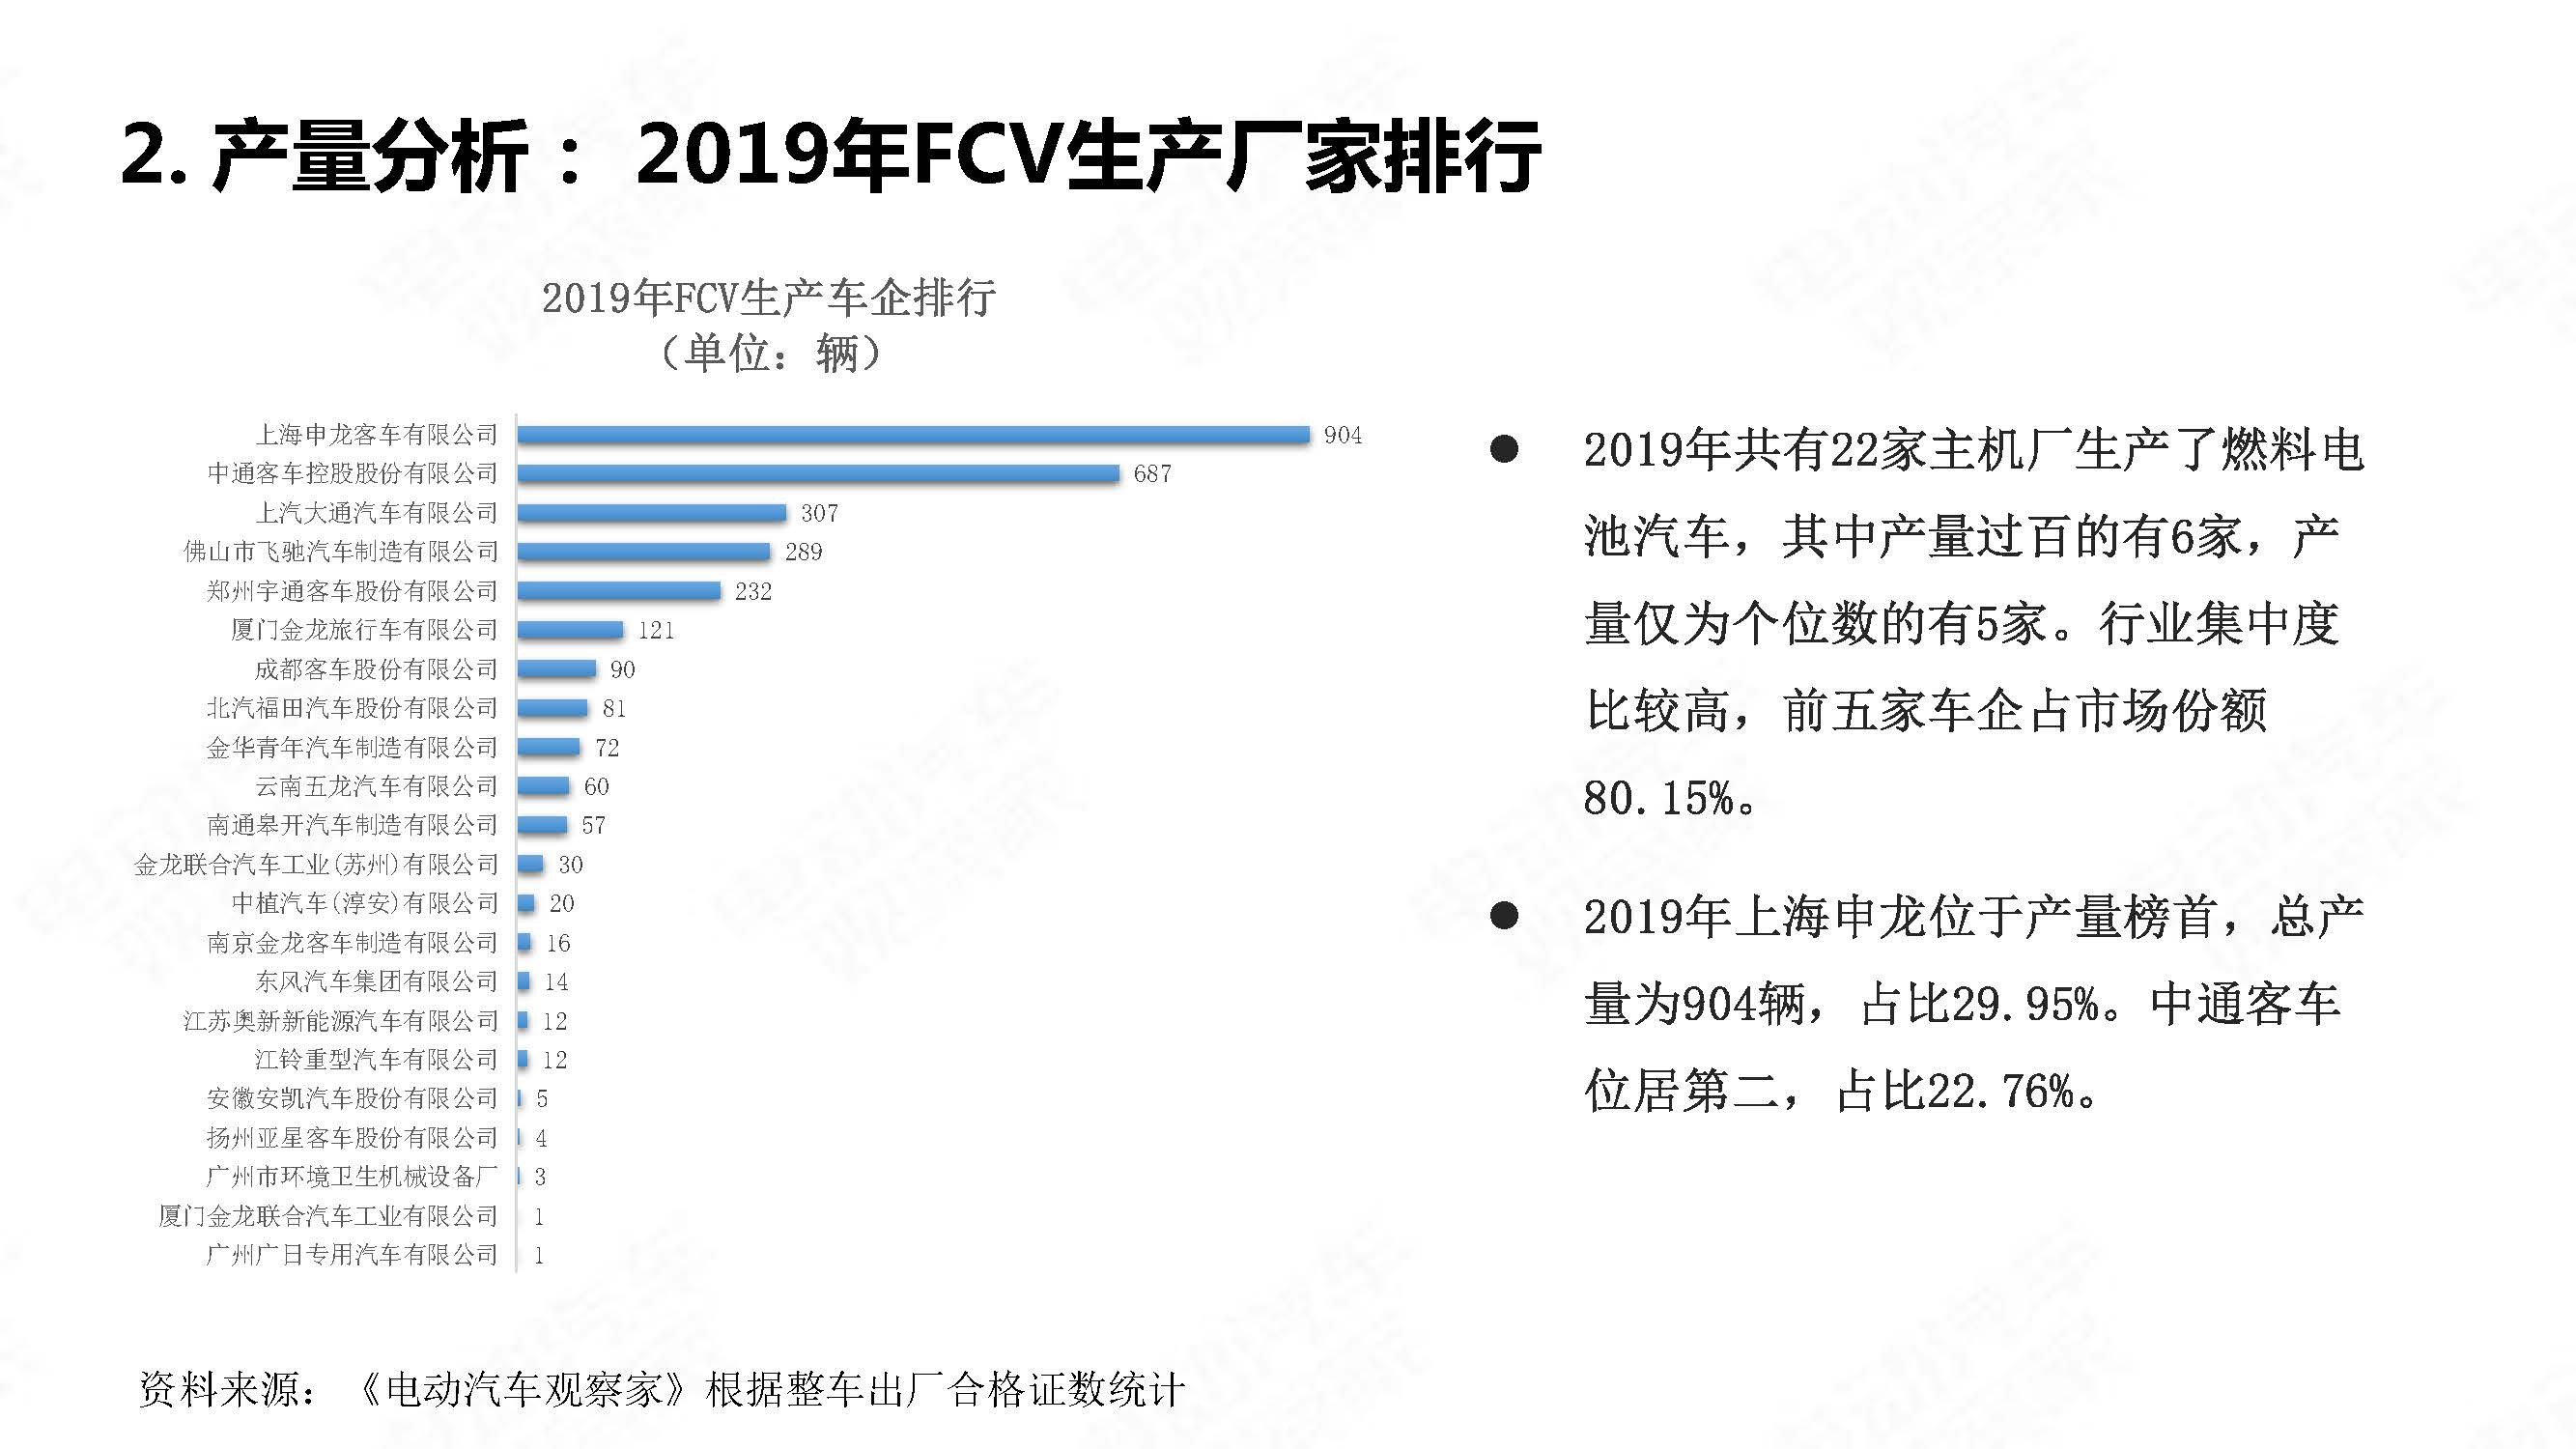 中国氢燃料电池汽车年度观察2020_页面_07